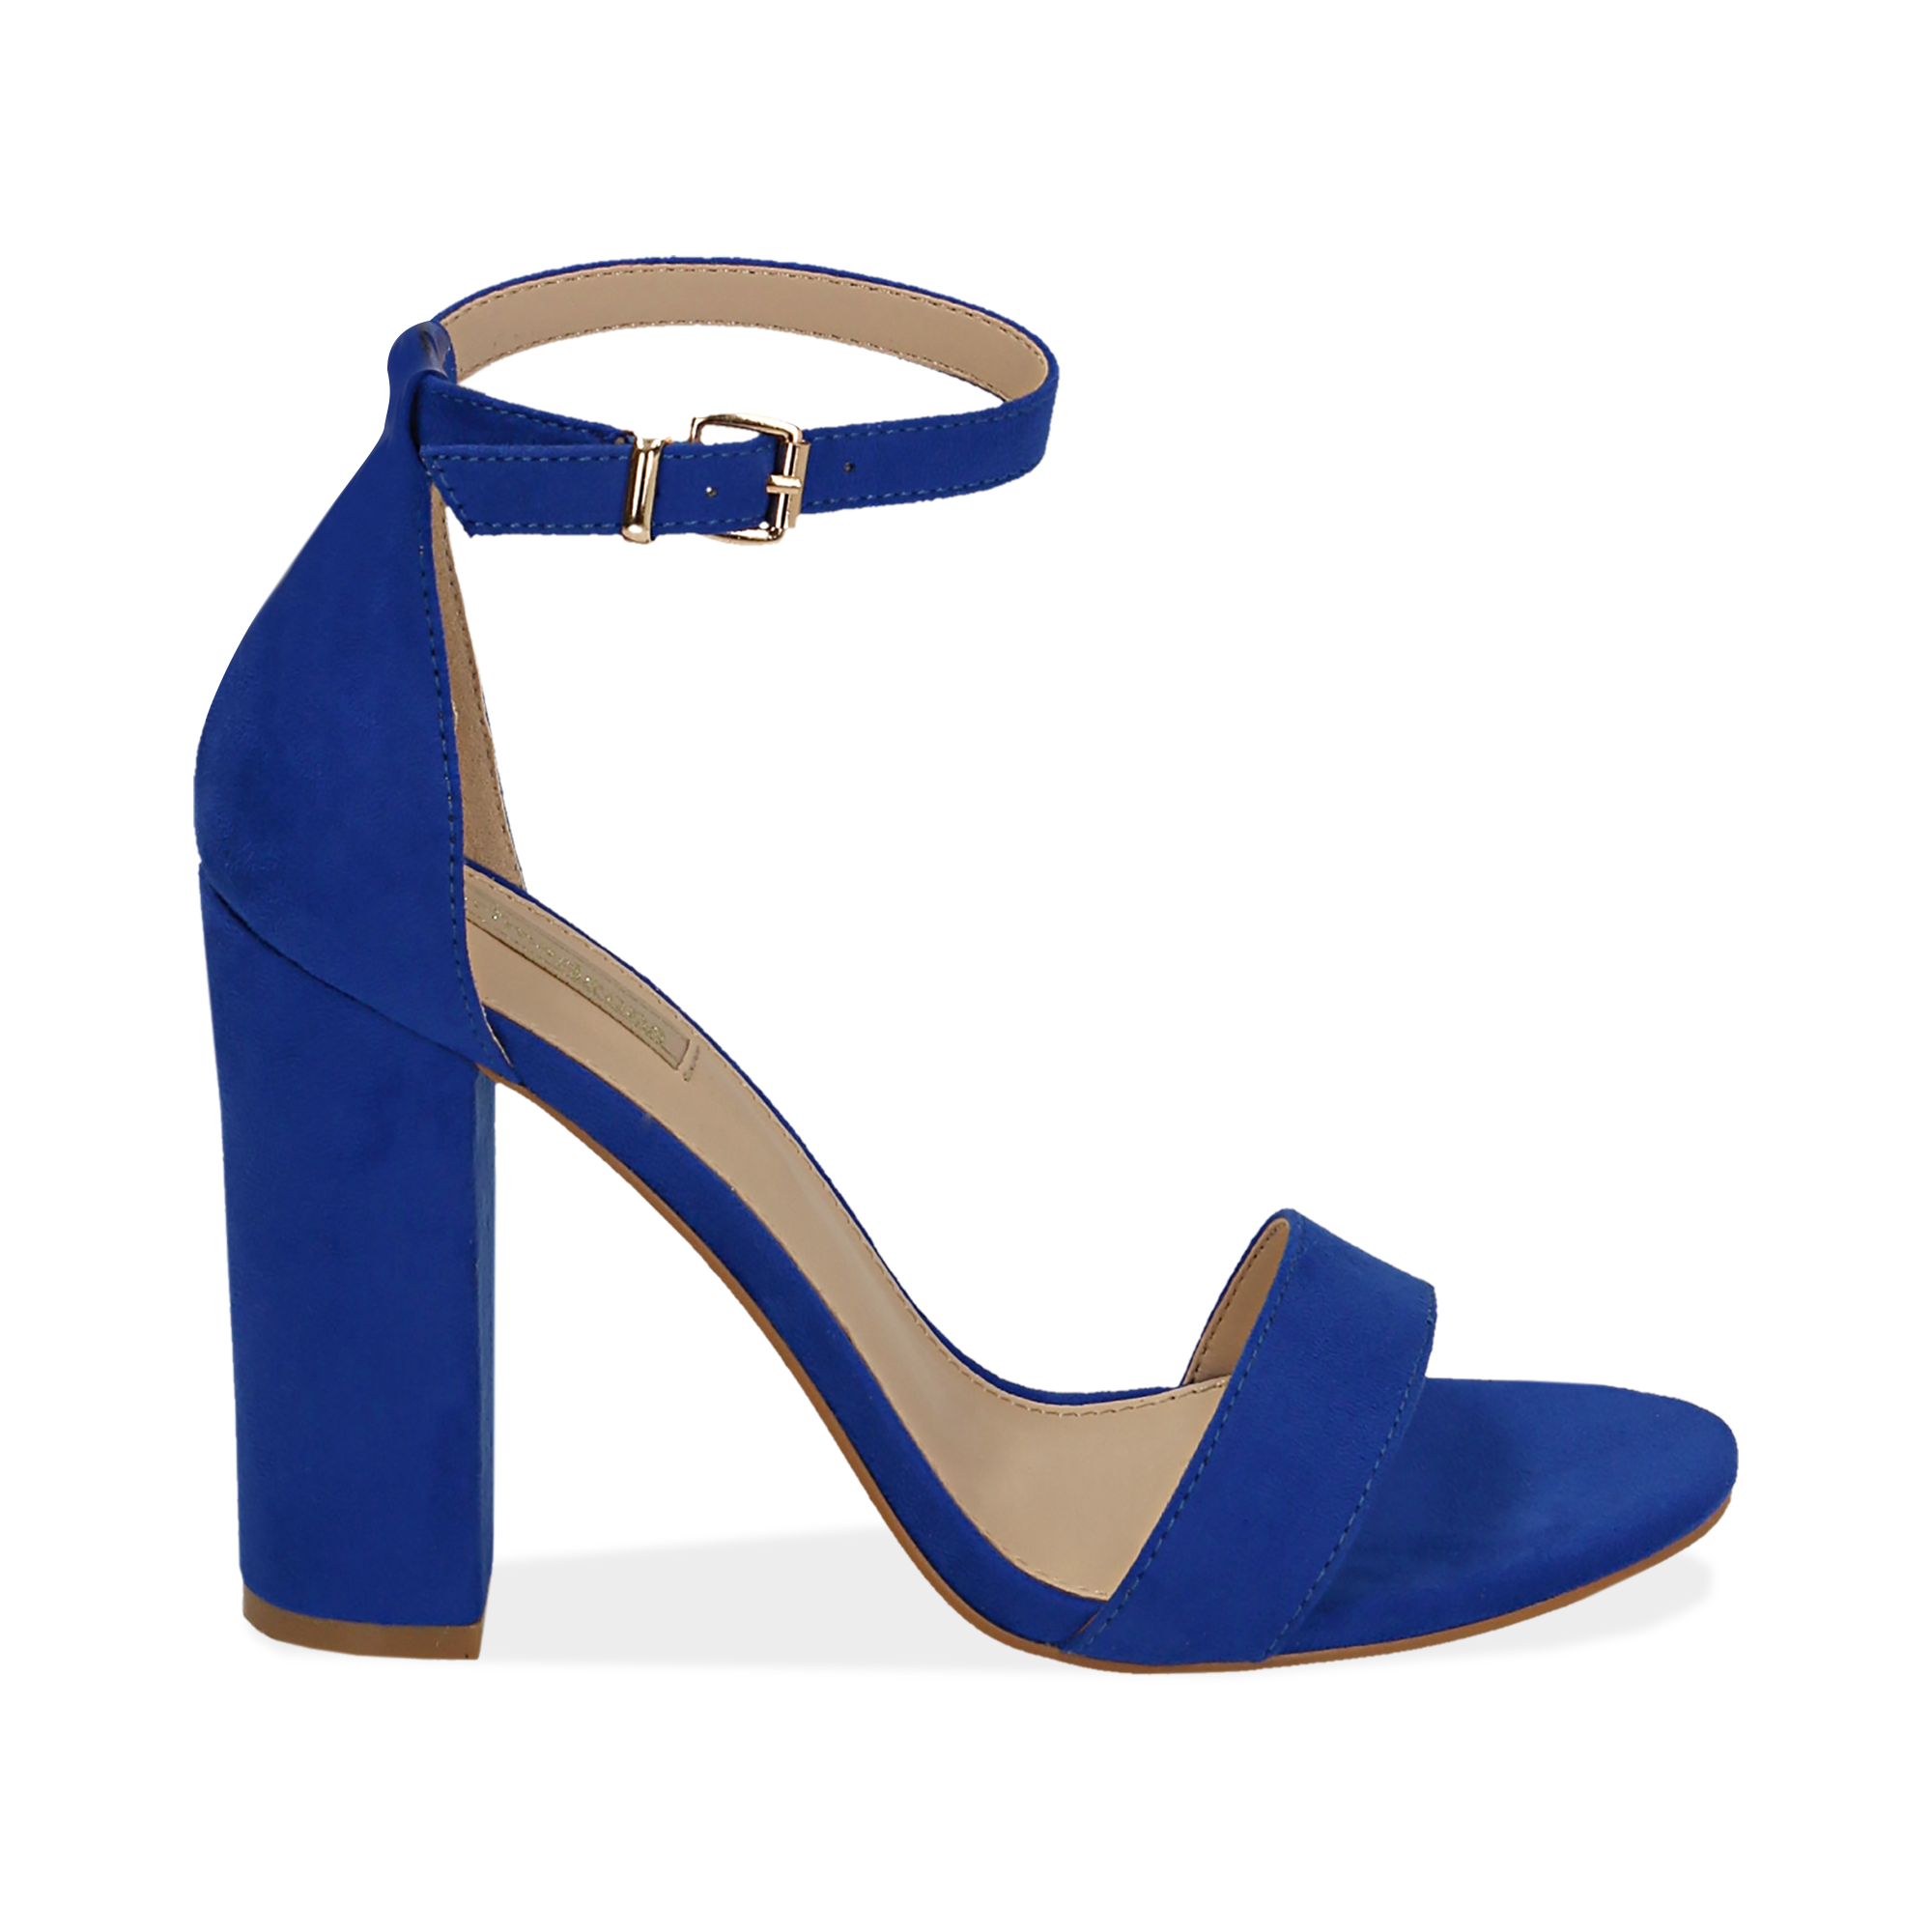 sandali con tacco blu elettrico